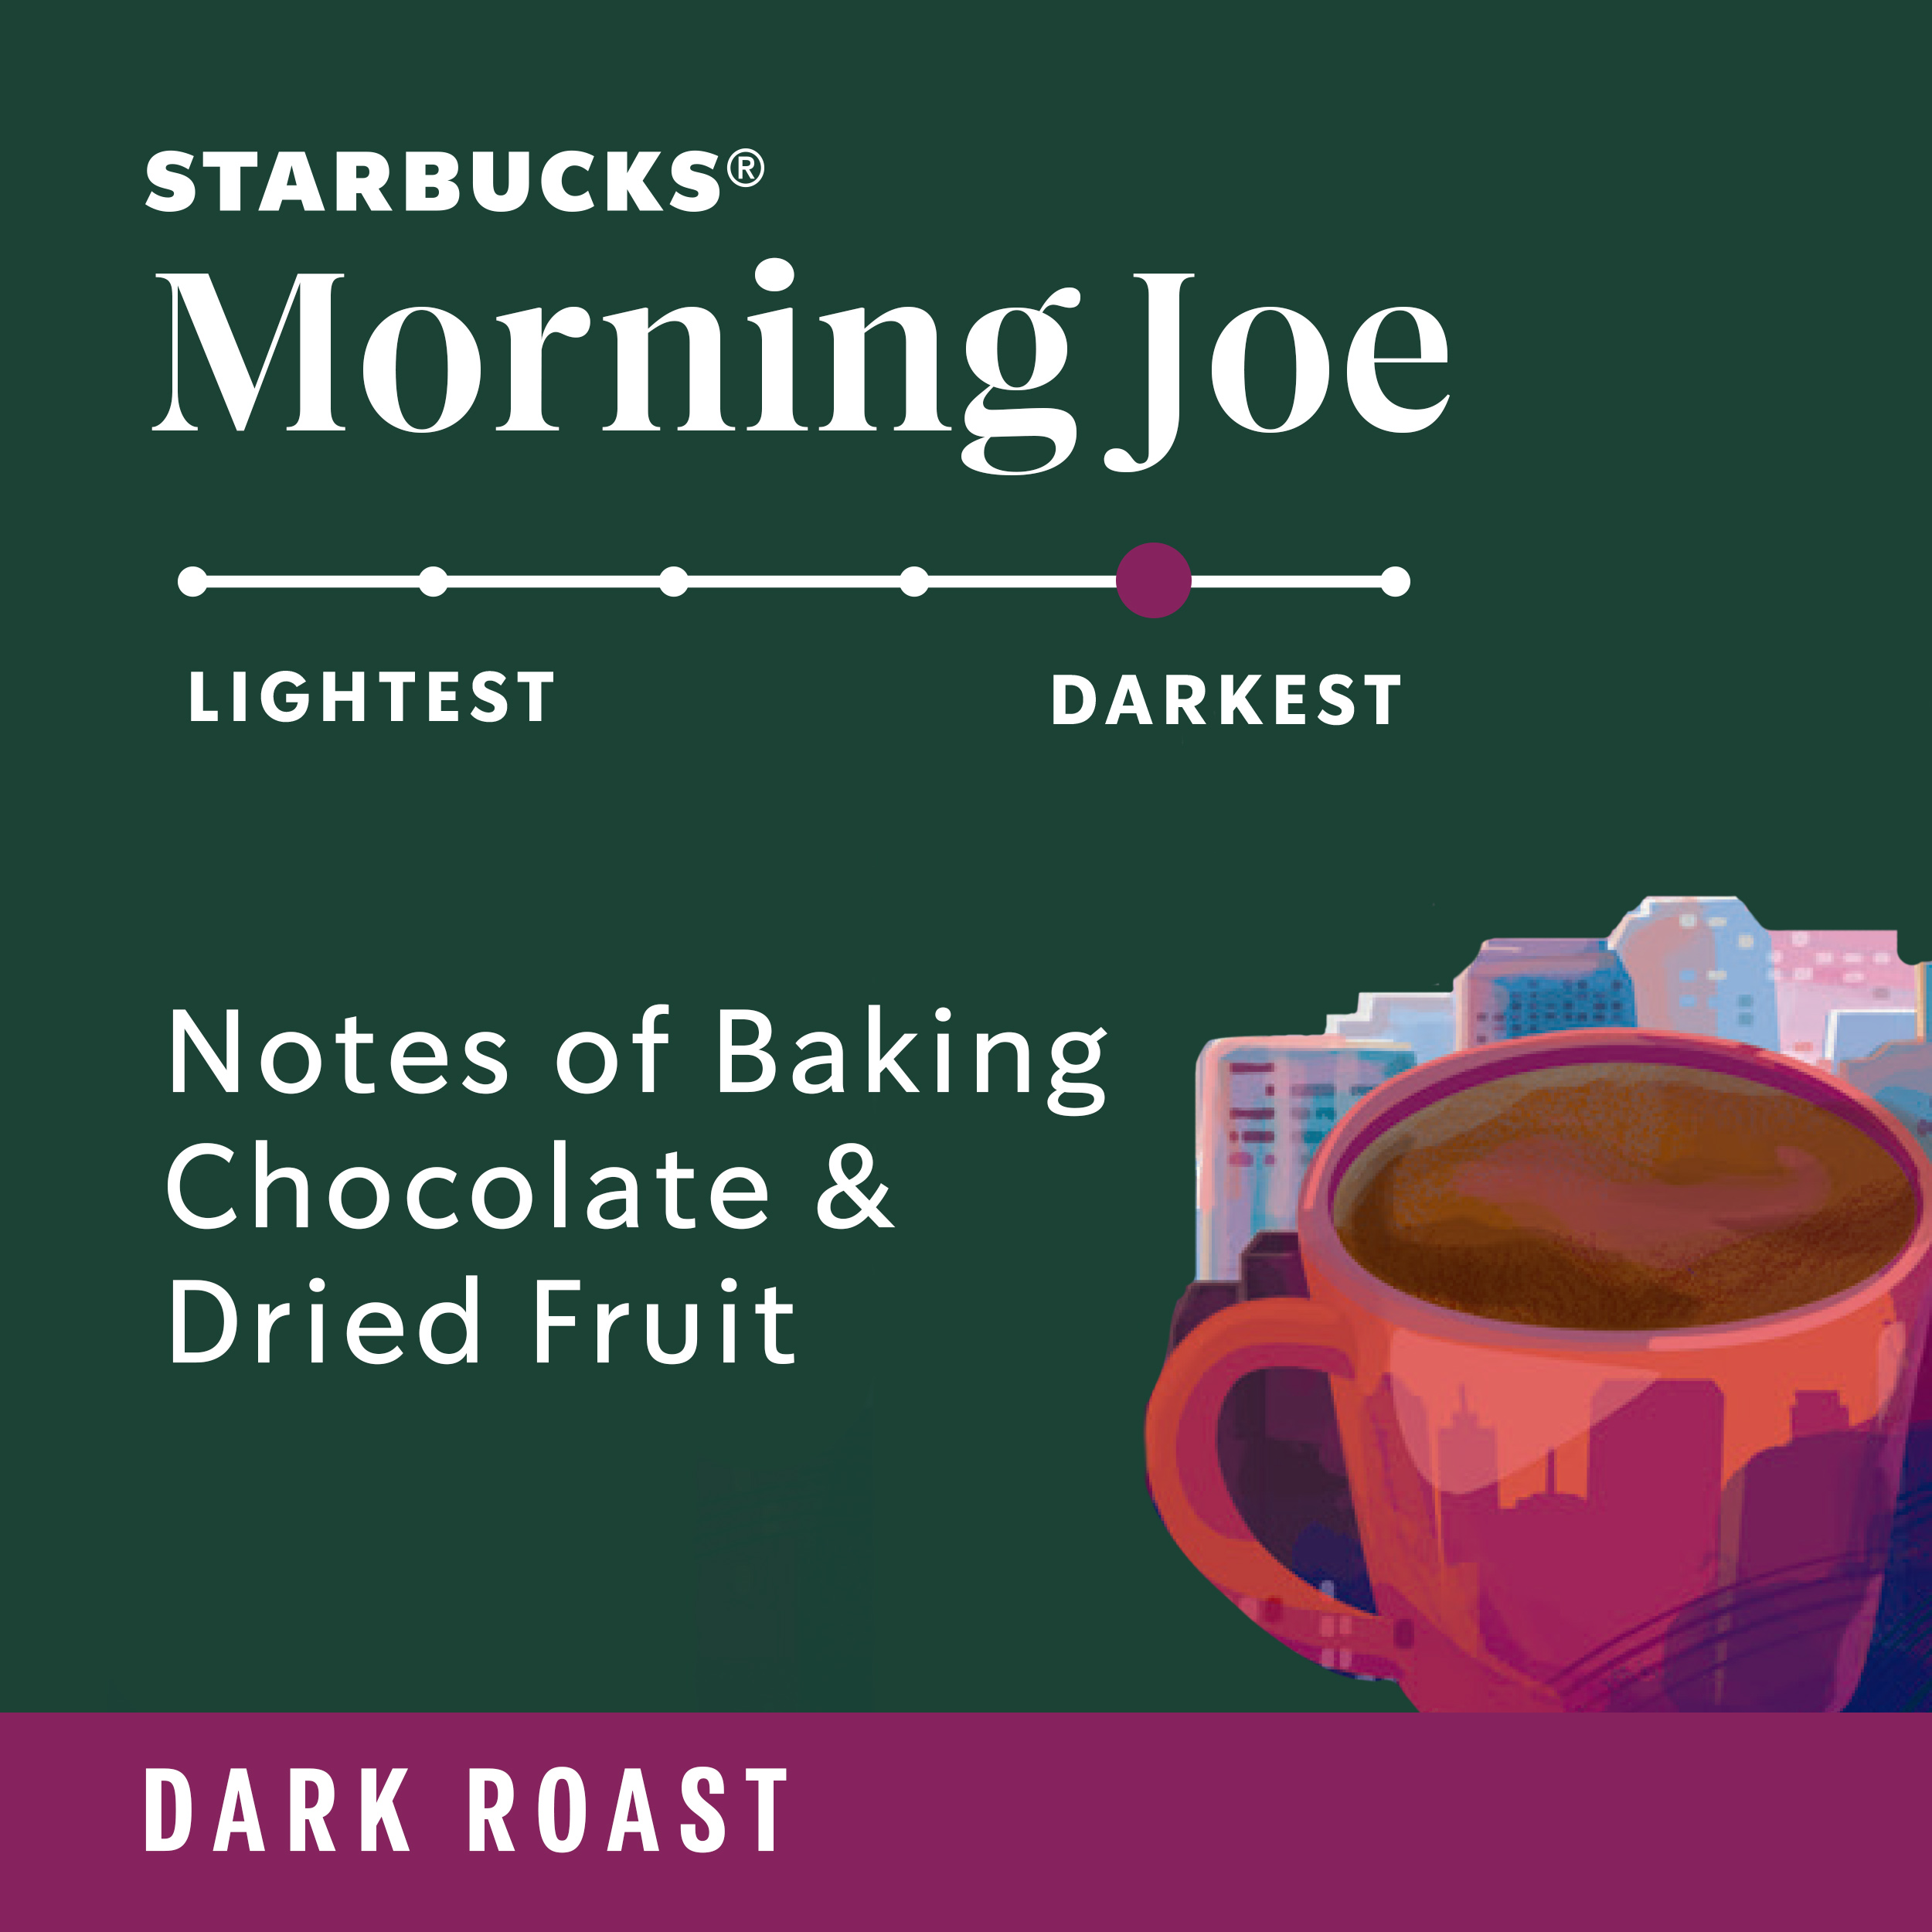 Starbucks Morning Joe, Ground Coffee, Dark Roast, 12 oz - image 3 of 8